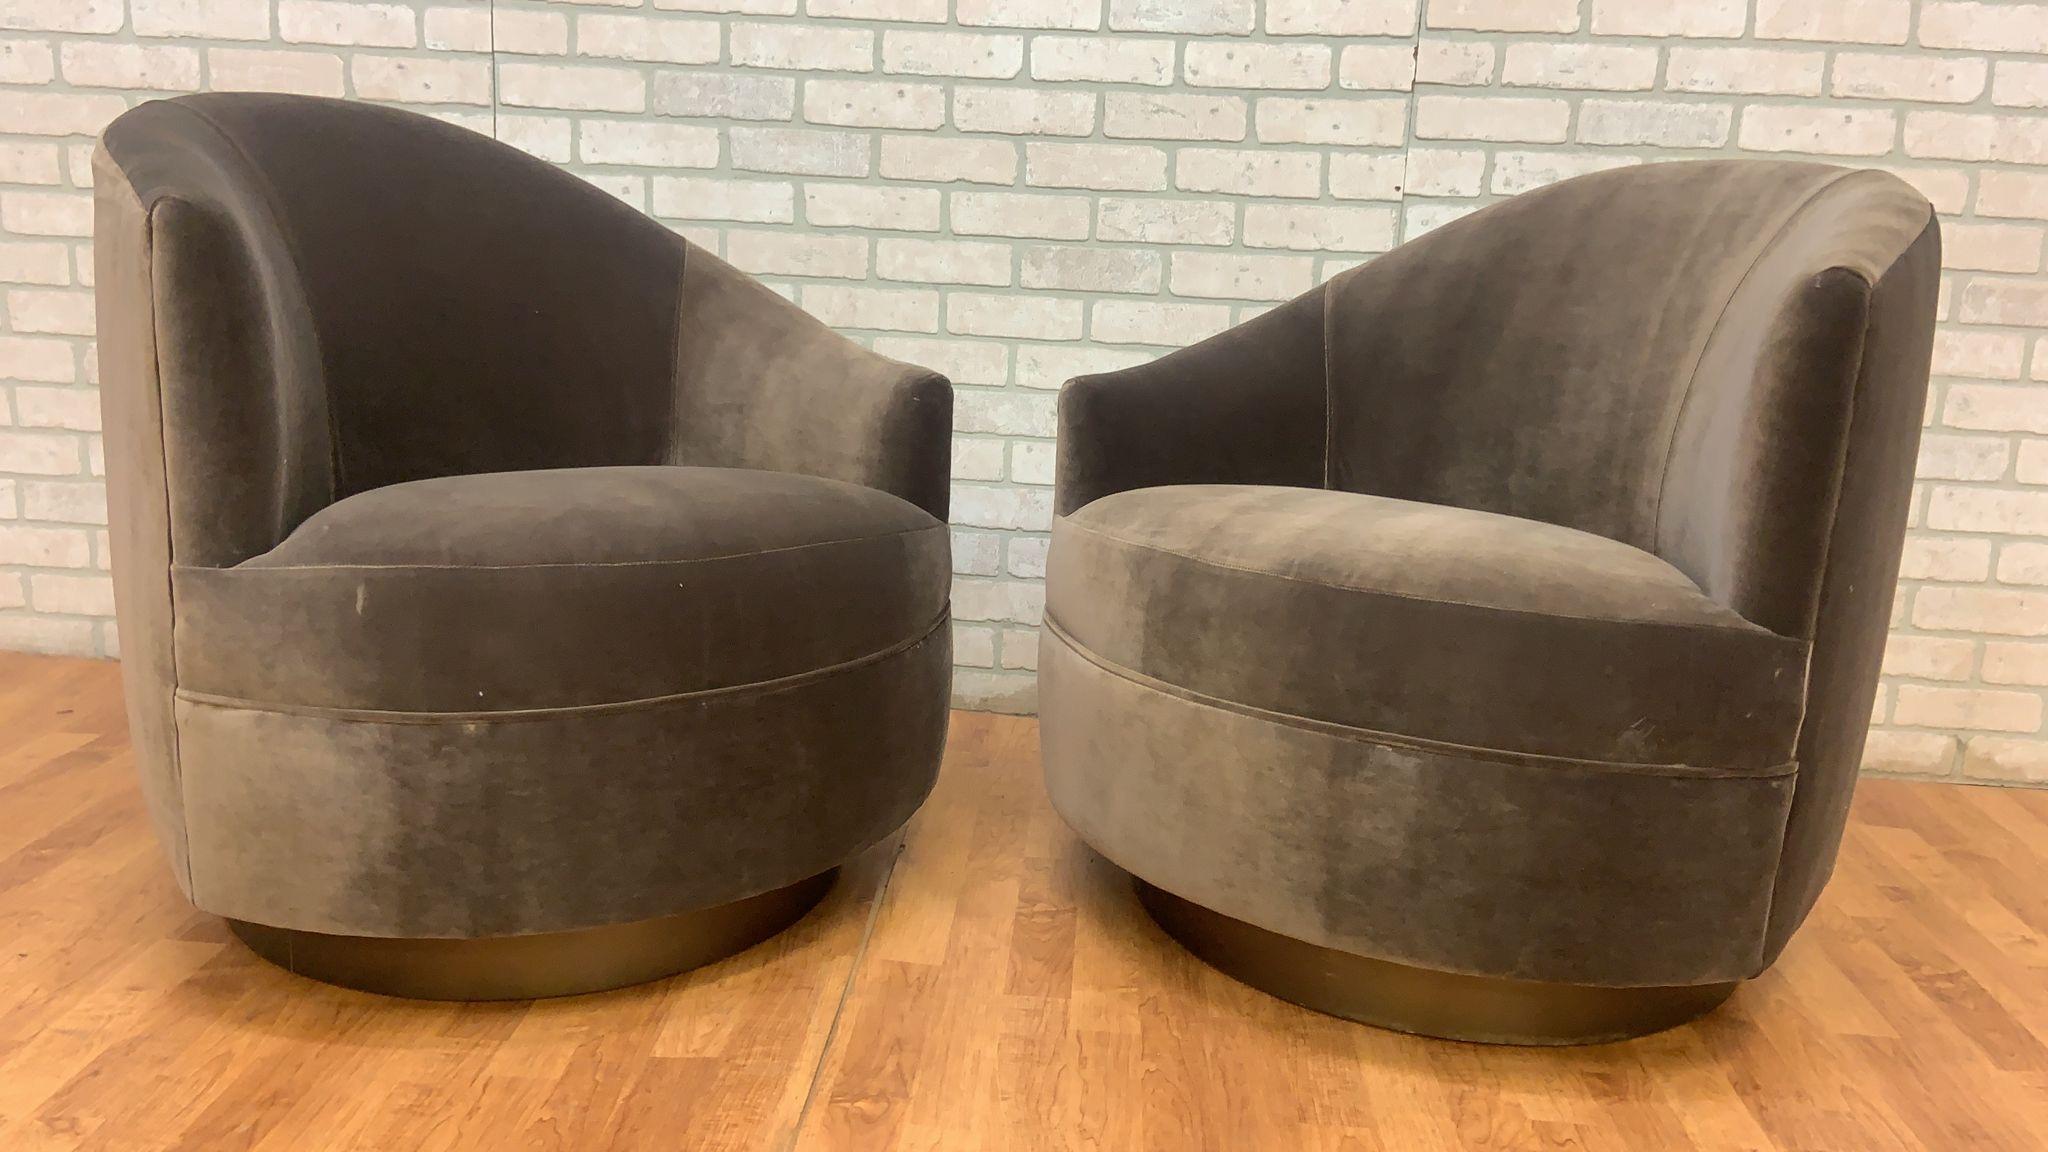 Chaises pivotantes post-modernes à dossier asymétrique en forme de tonneau nouvellement rembourrées en velours gris sur une base en bronze

Les Post Modern Asymmetrical Barrel Back Swivel Chairs sont une paire de chaises étonnantes qui illustrent